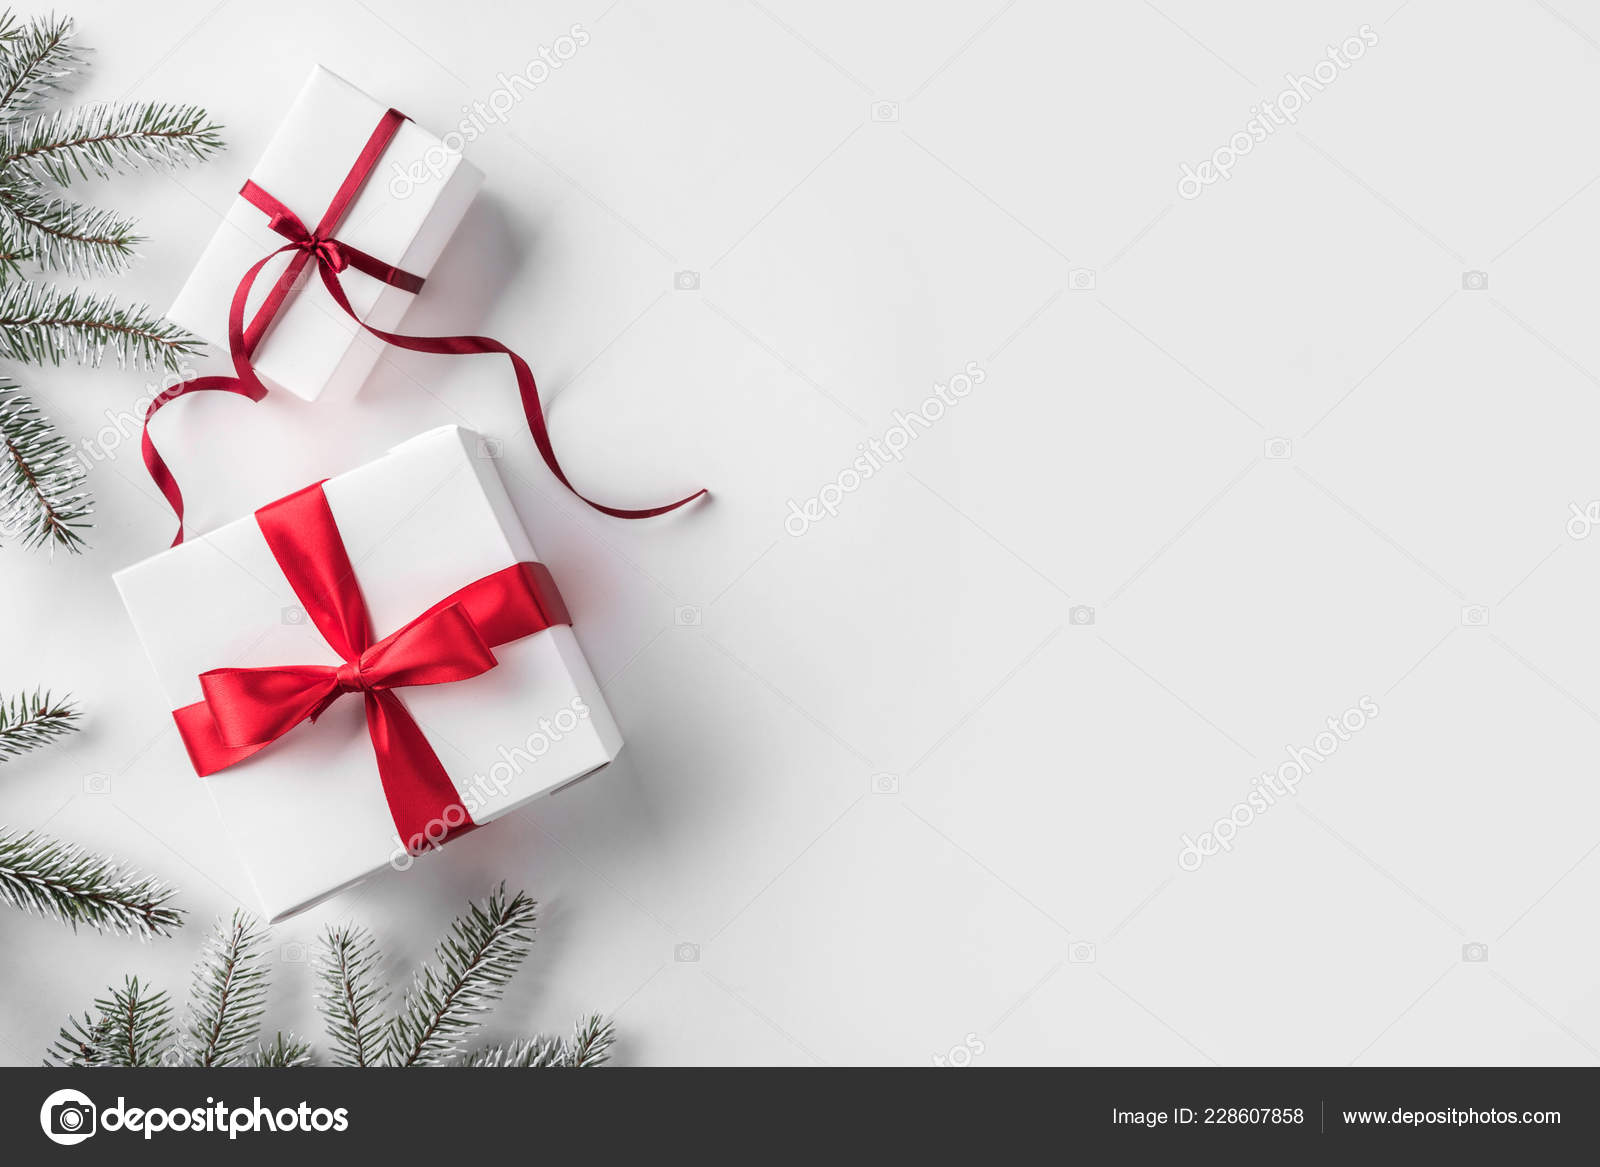 Nền trắng quà tặng Giáng sinh thực sự rất xinh đẹp và đầy ý nghĩa. Những chiếc hộp quà tinh tế và thật ngọt ngào đã sẵn sàng đến tay bạn. Bên cạnh đó, màu trắng tinh khiết còn mang đến cho bạn cảm giác thanh bình và bình yên trong không gian ngày lễ. Hãy cùng chúng tôi khám phá và mua sắm cho những người thân yêu của bạn những món quà đầy ý nghĩa nhé!